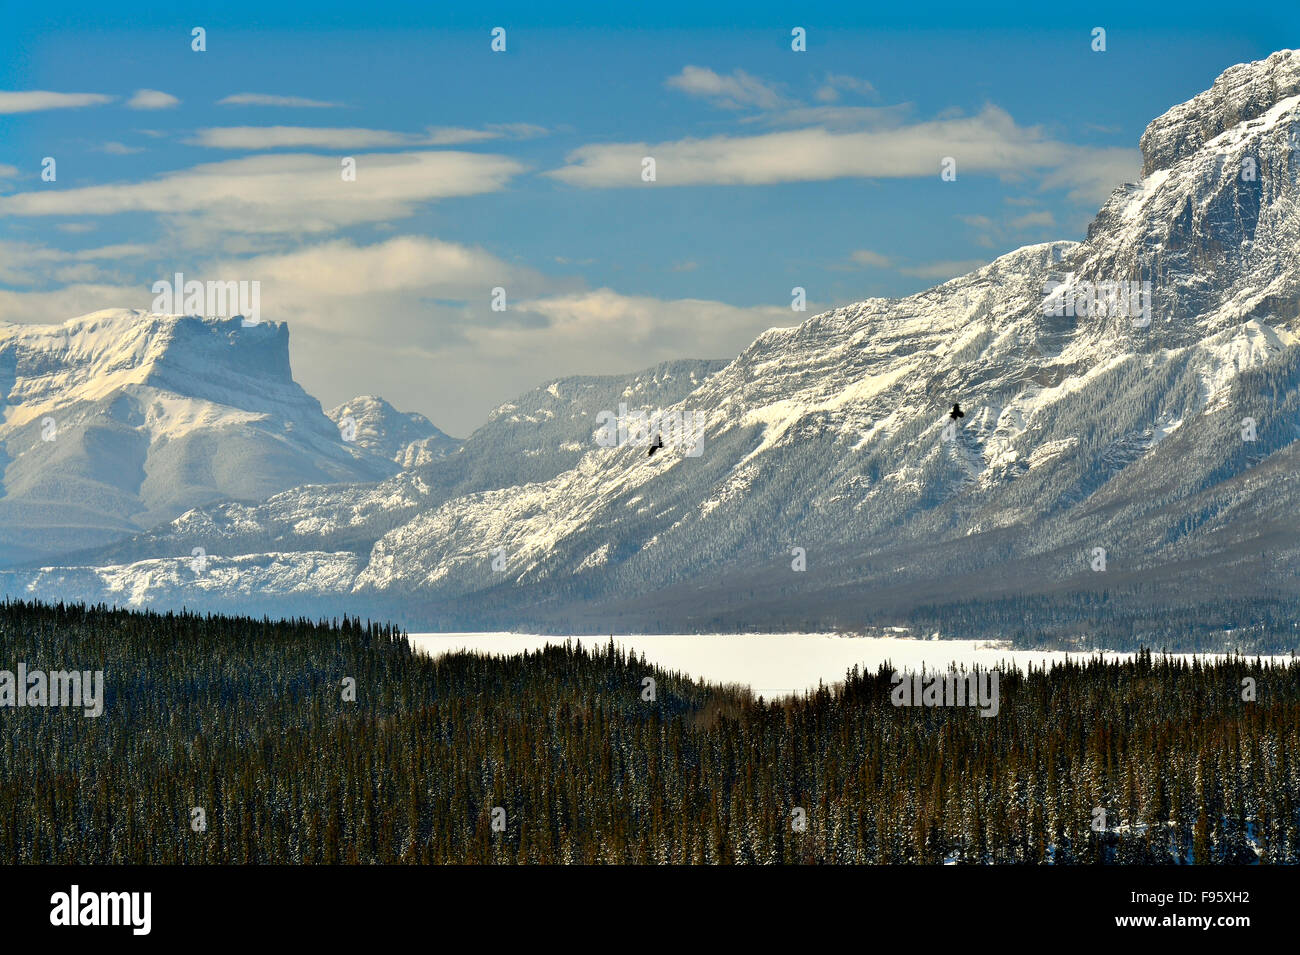 Ein Winter-Landschaft-Bild eingefangen am Brule der schneebedeckten Rocky Mountains der westlichen Provinz Alberta, Kanada Stockfoto